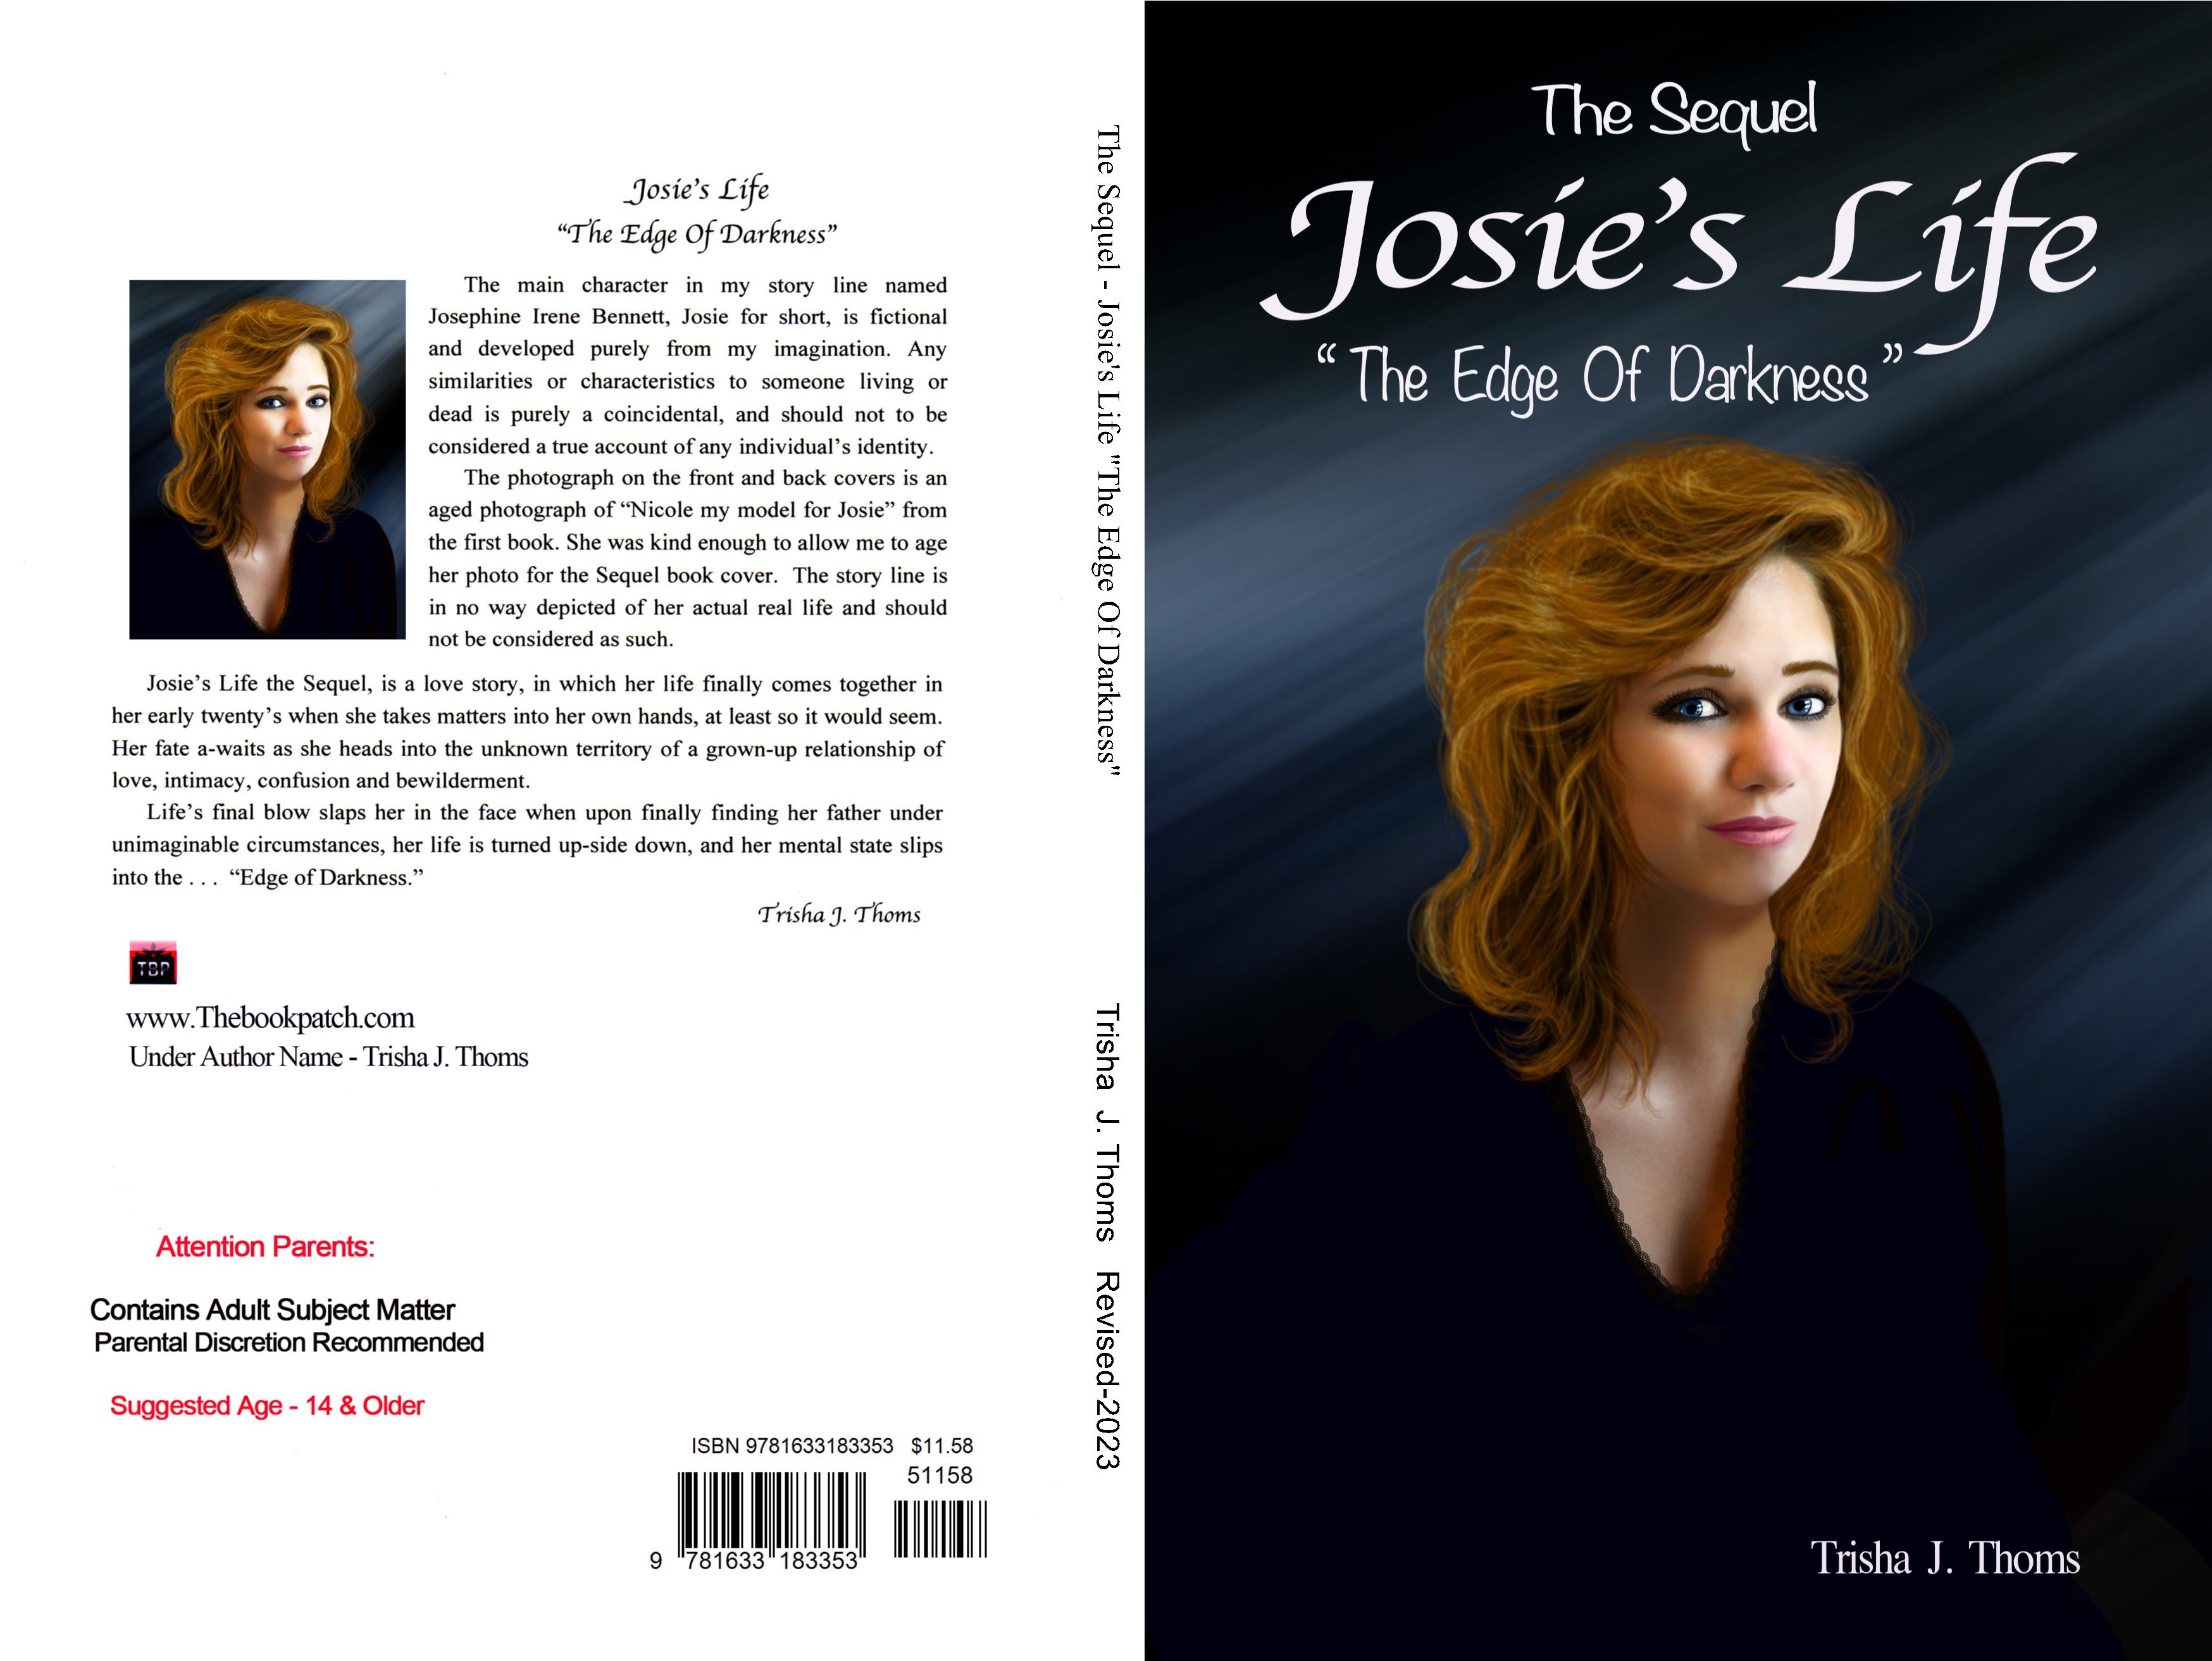 The Sequel - Josie